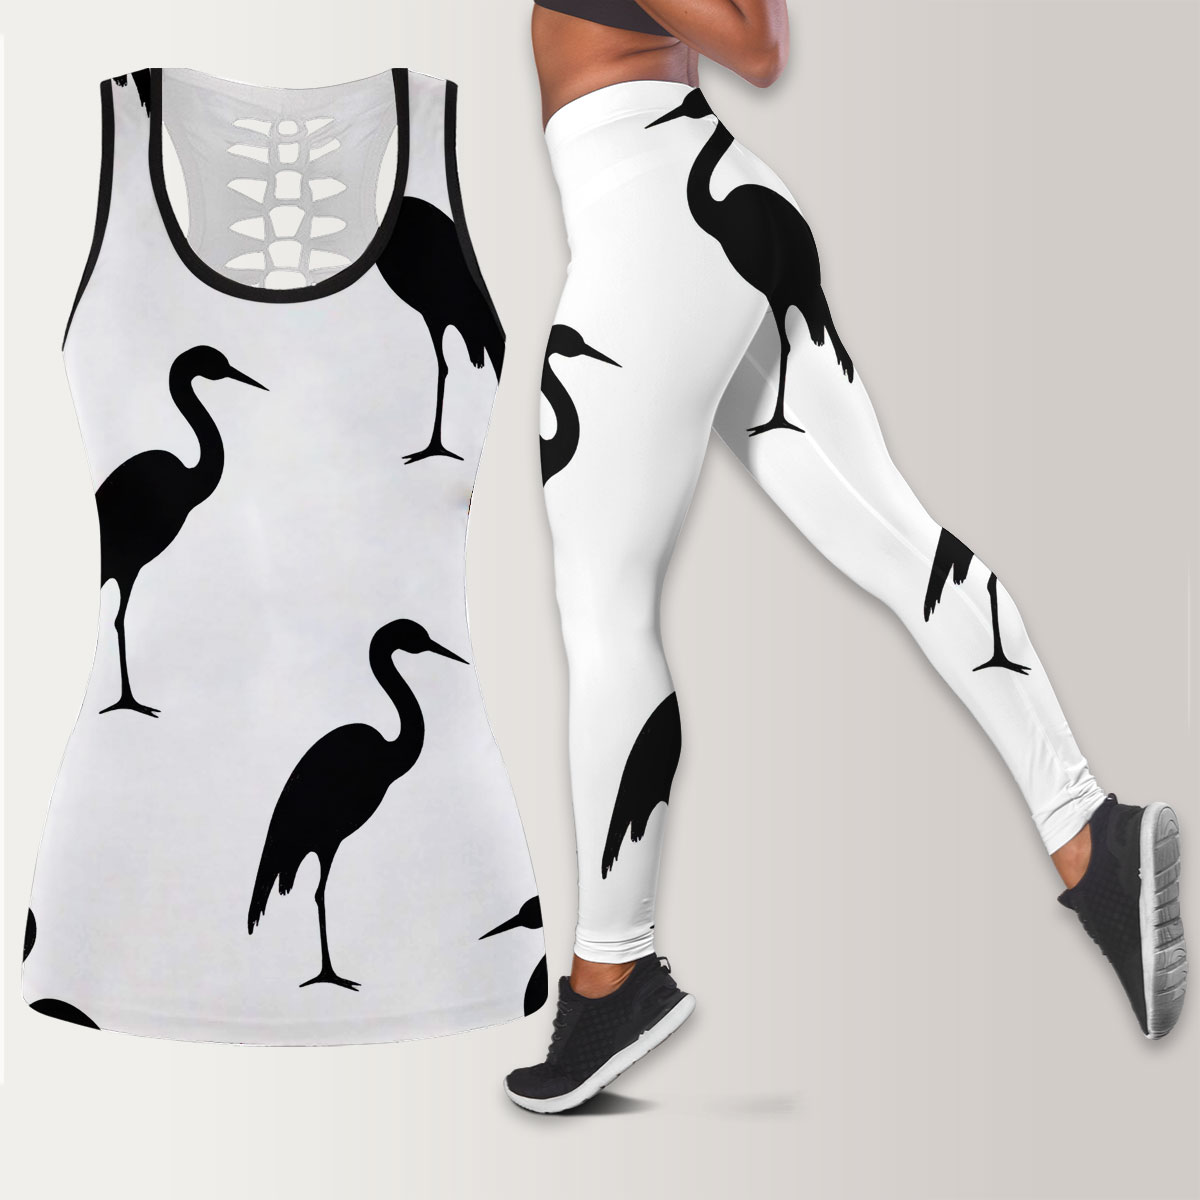 Black And White Heron Art Legging Tank Top set